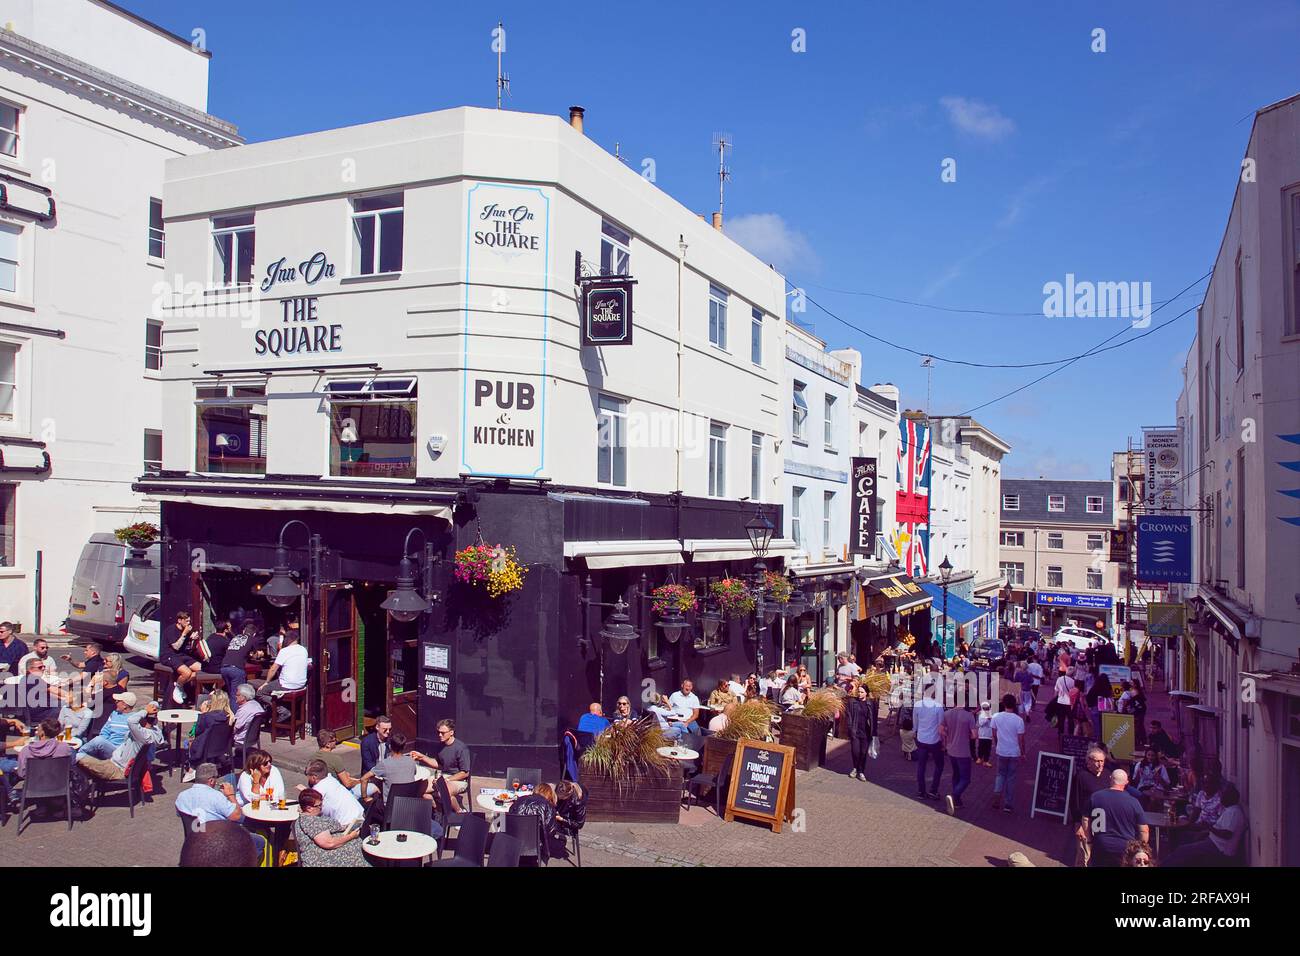 Inghilterra, East Sussex, Brighton, esterno dell'Inn on the Square in Cranbrook Street affollato di turisti che mangiano e bevono. Foto Stock